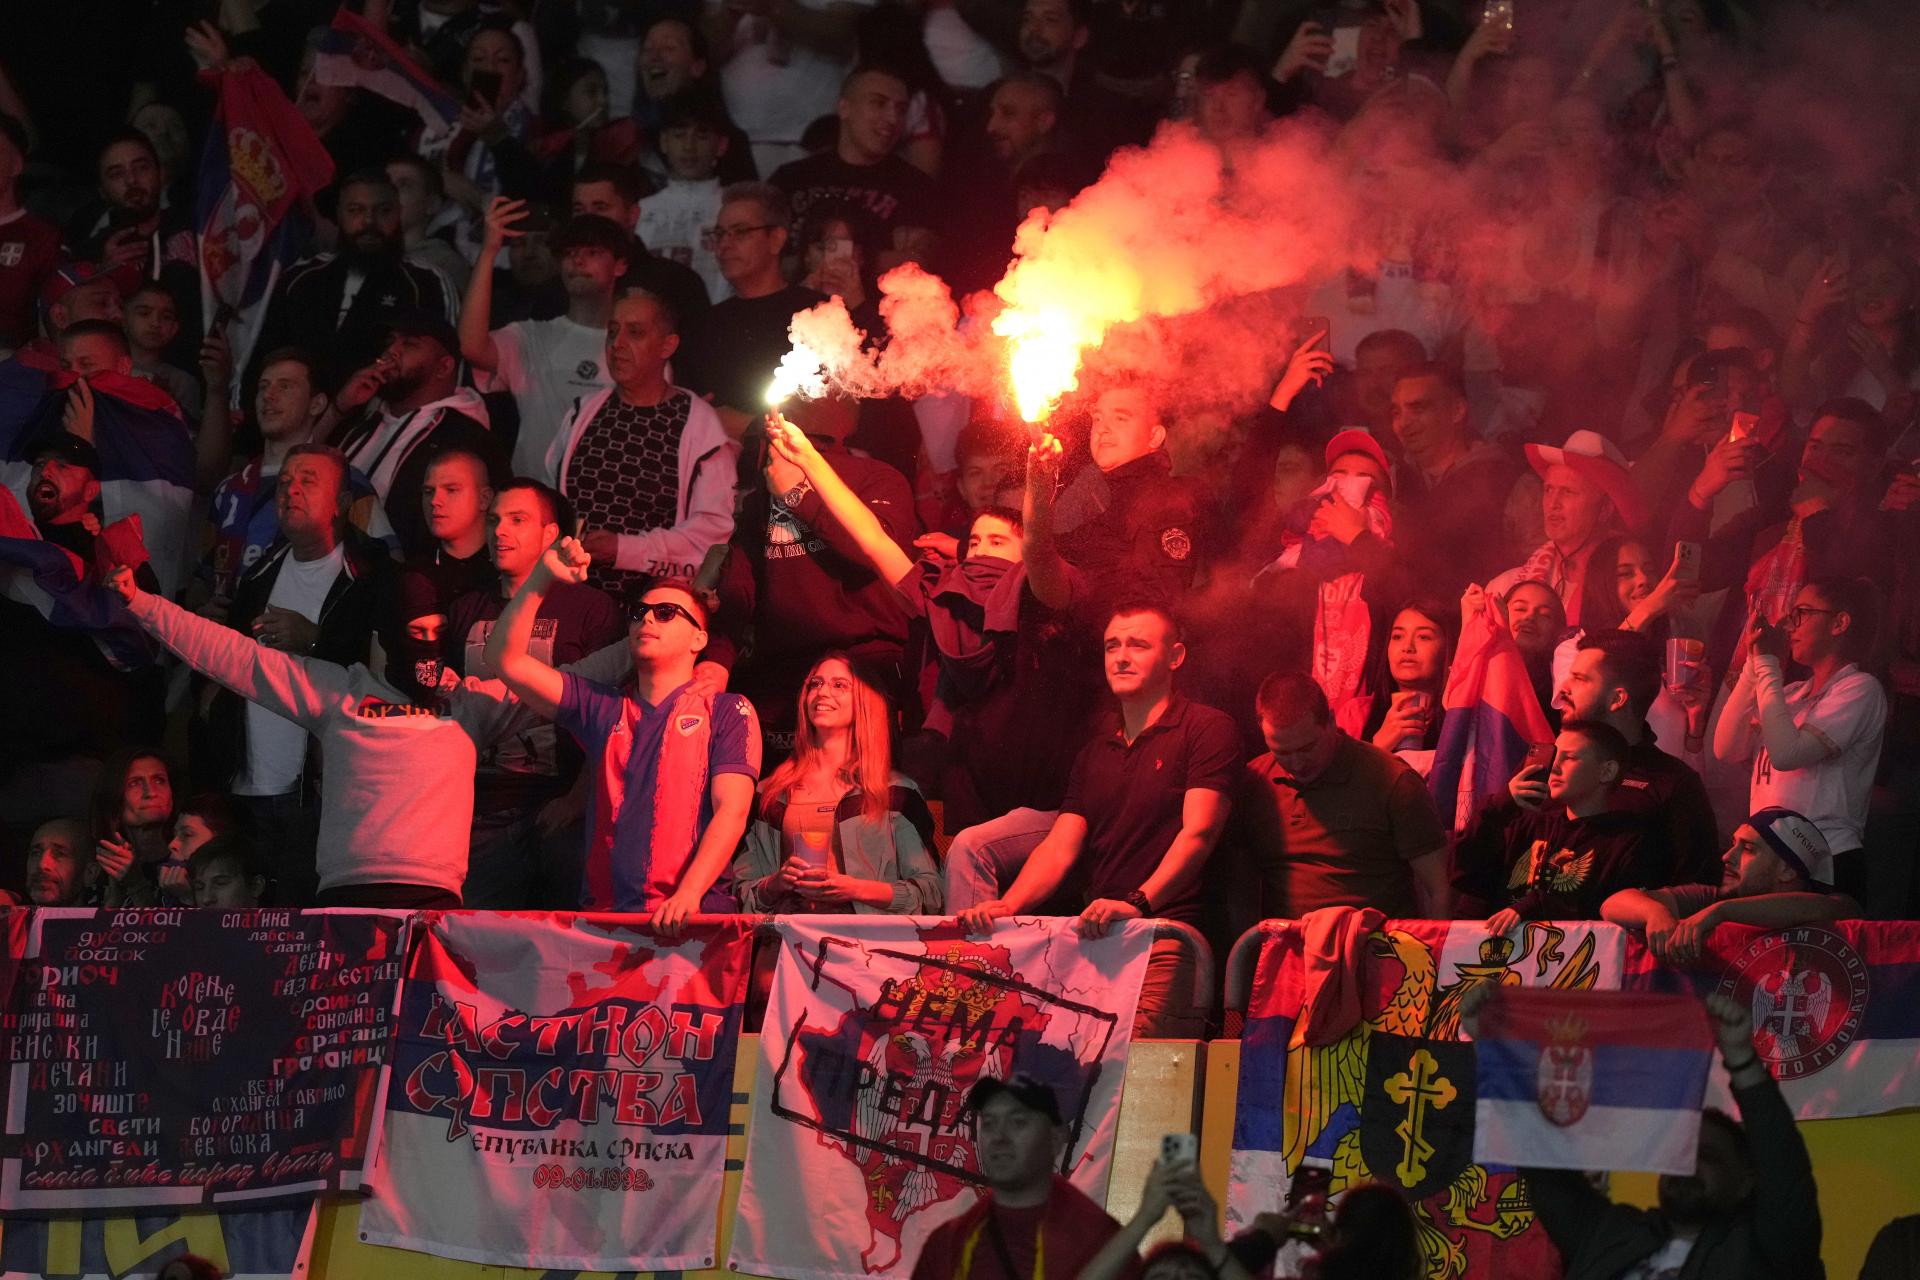 UEFA potrestala Albánsko a Srbsko za nacionalistické bannery